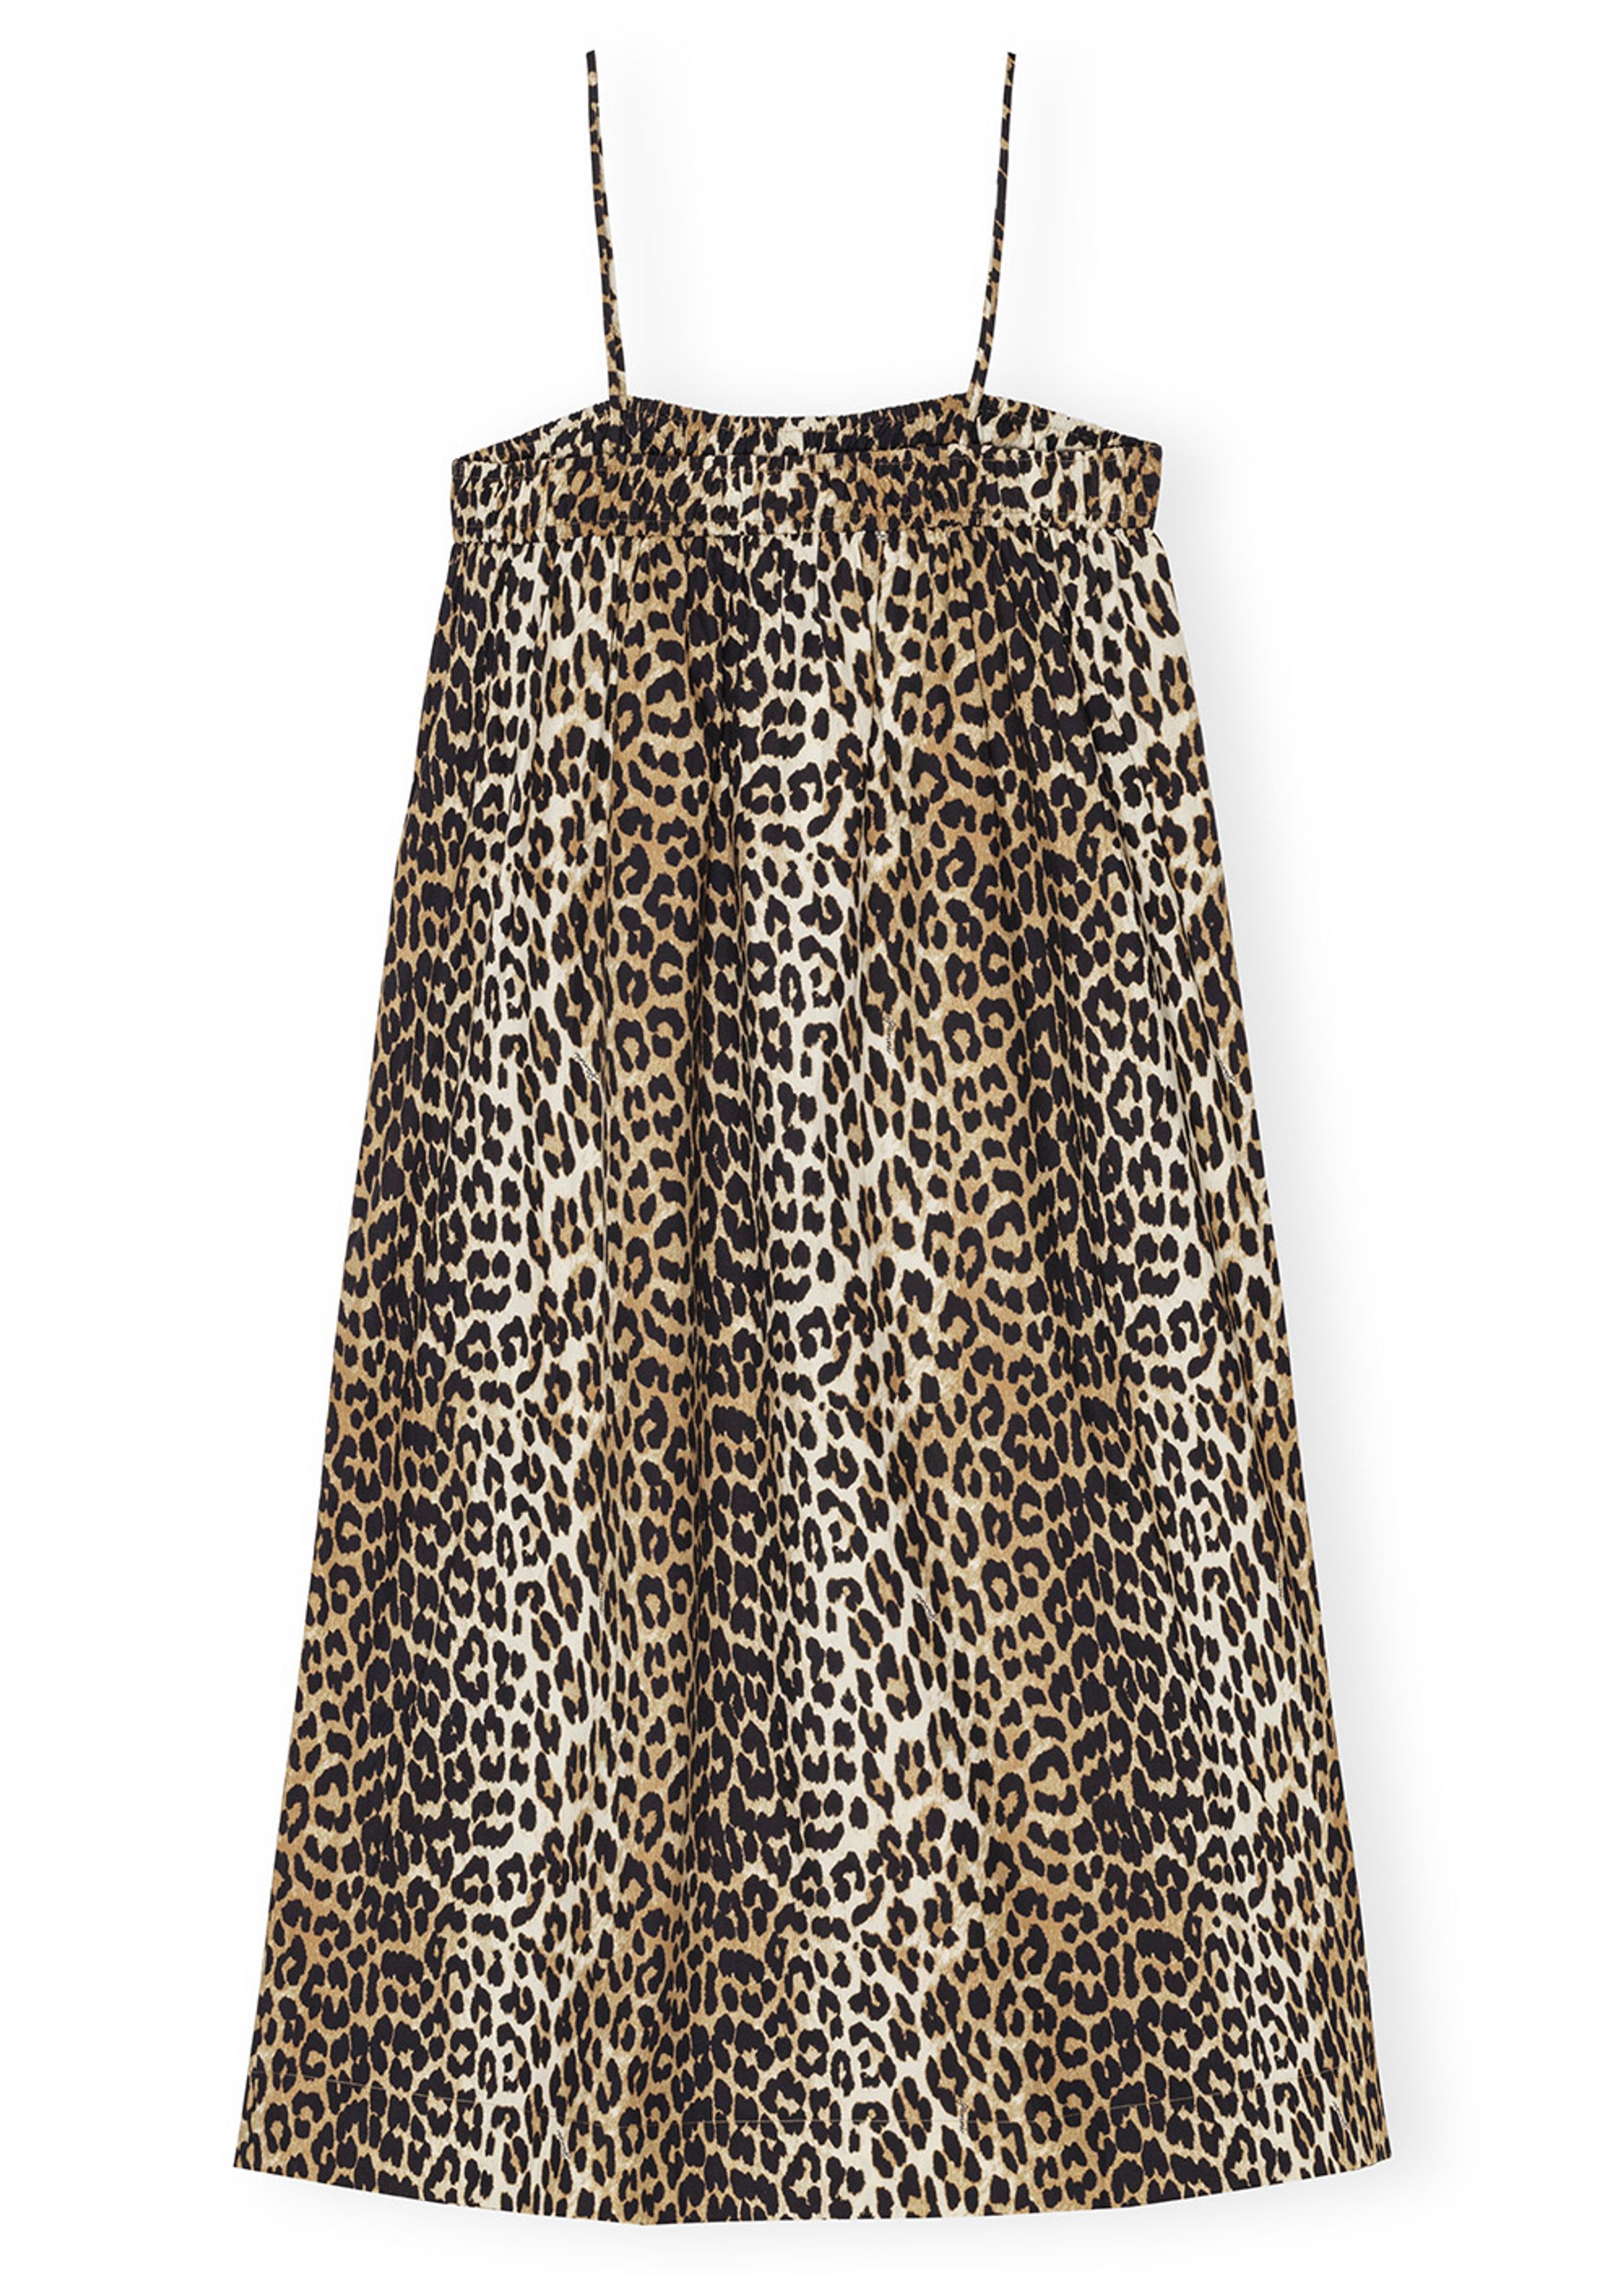 Ganni - Jurk - Printed Cotton Midi Strap Dress - Leopard